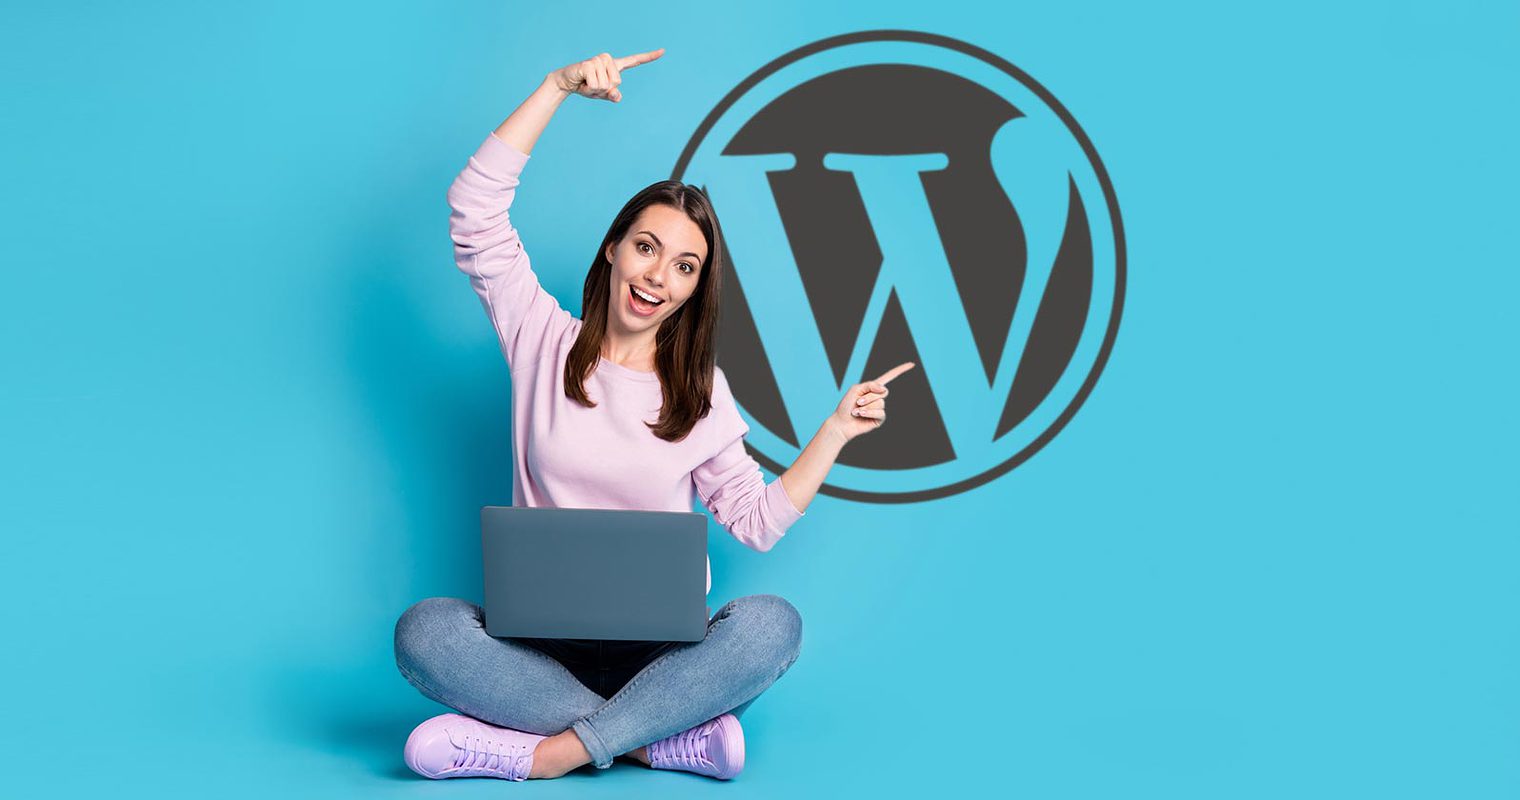 wordpress 6 627233df6fbbc sej Wordpress vs Wix vs Squarespace vs Webflow vs Weebly